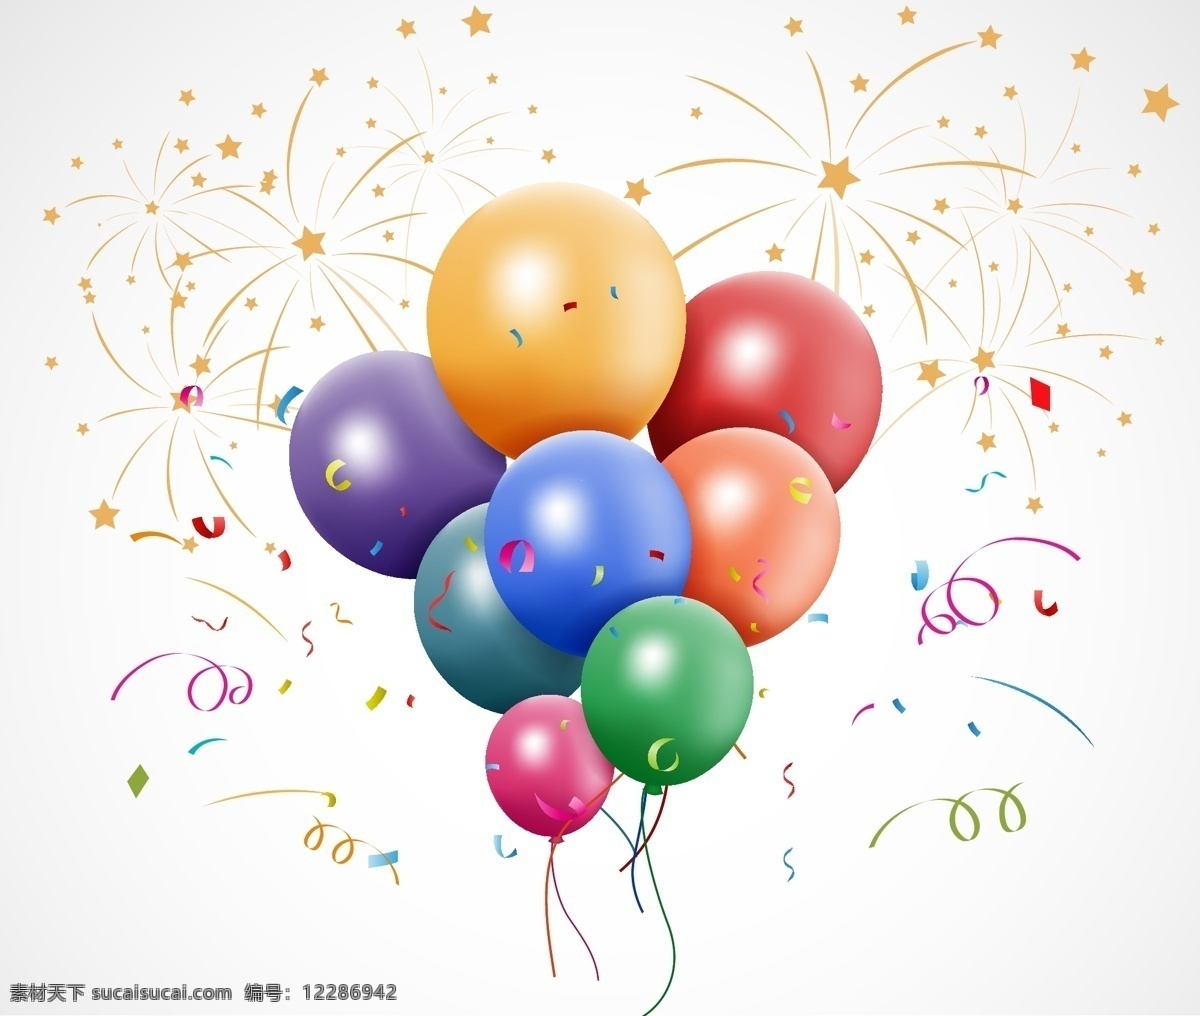 节日 喜庆 元素 矢量 气球背景 气球边框 气球素材 彩带素材 彩屑素材 节庆元素 气球底图 文化艺术 节日庆祝